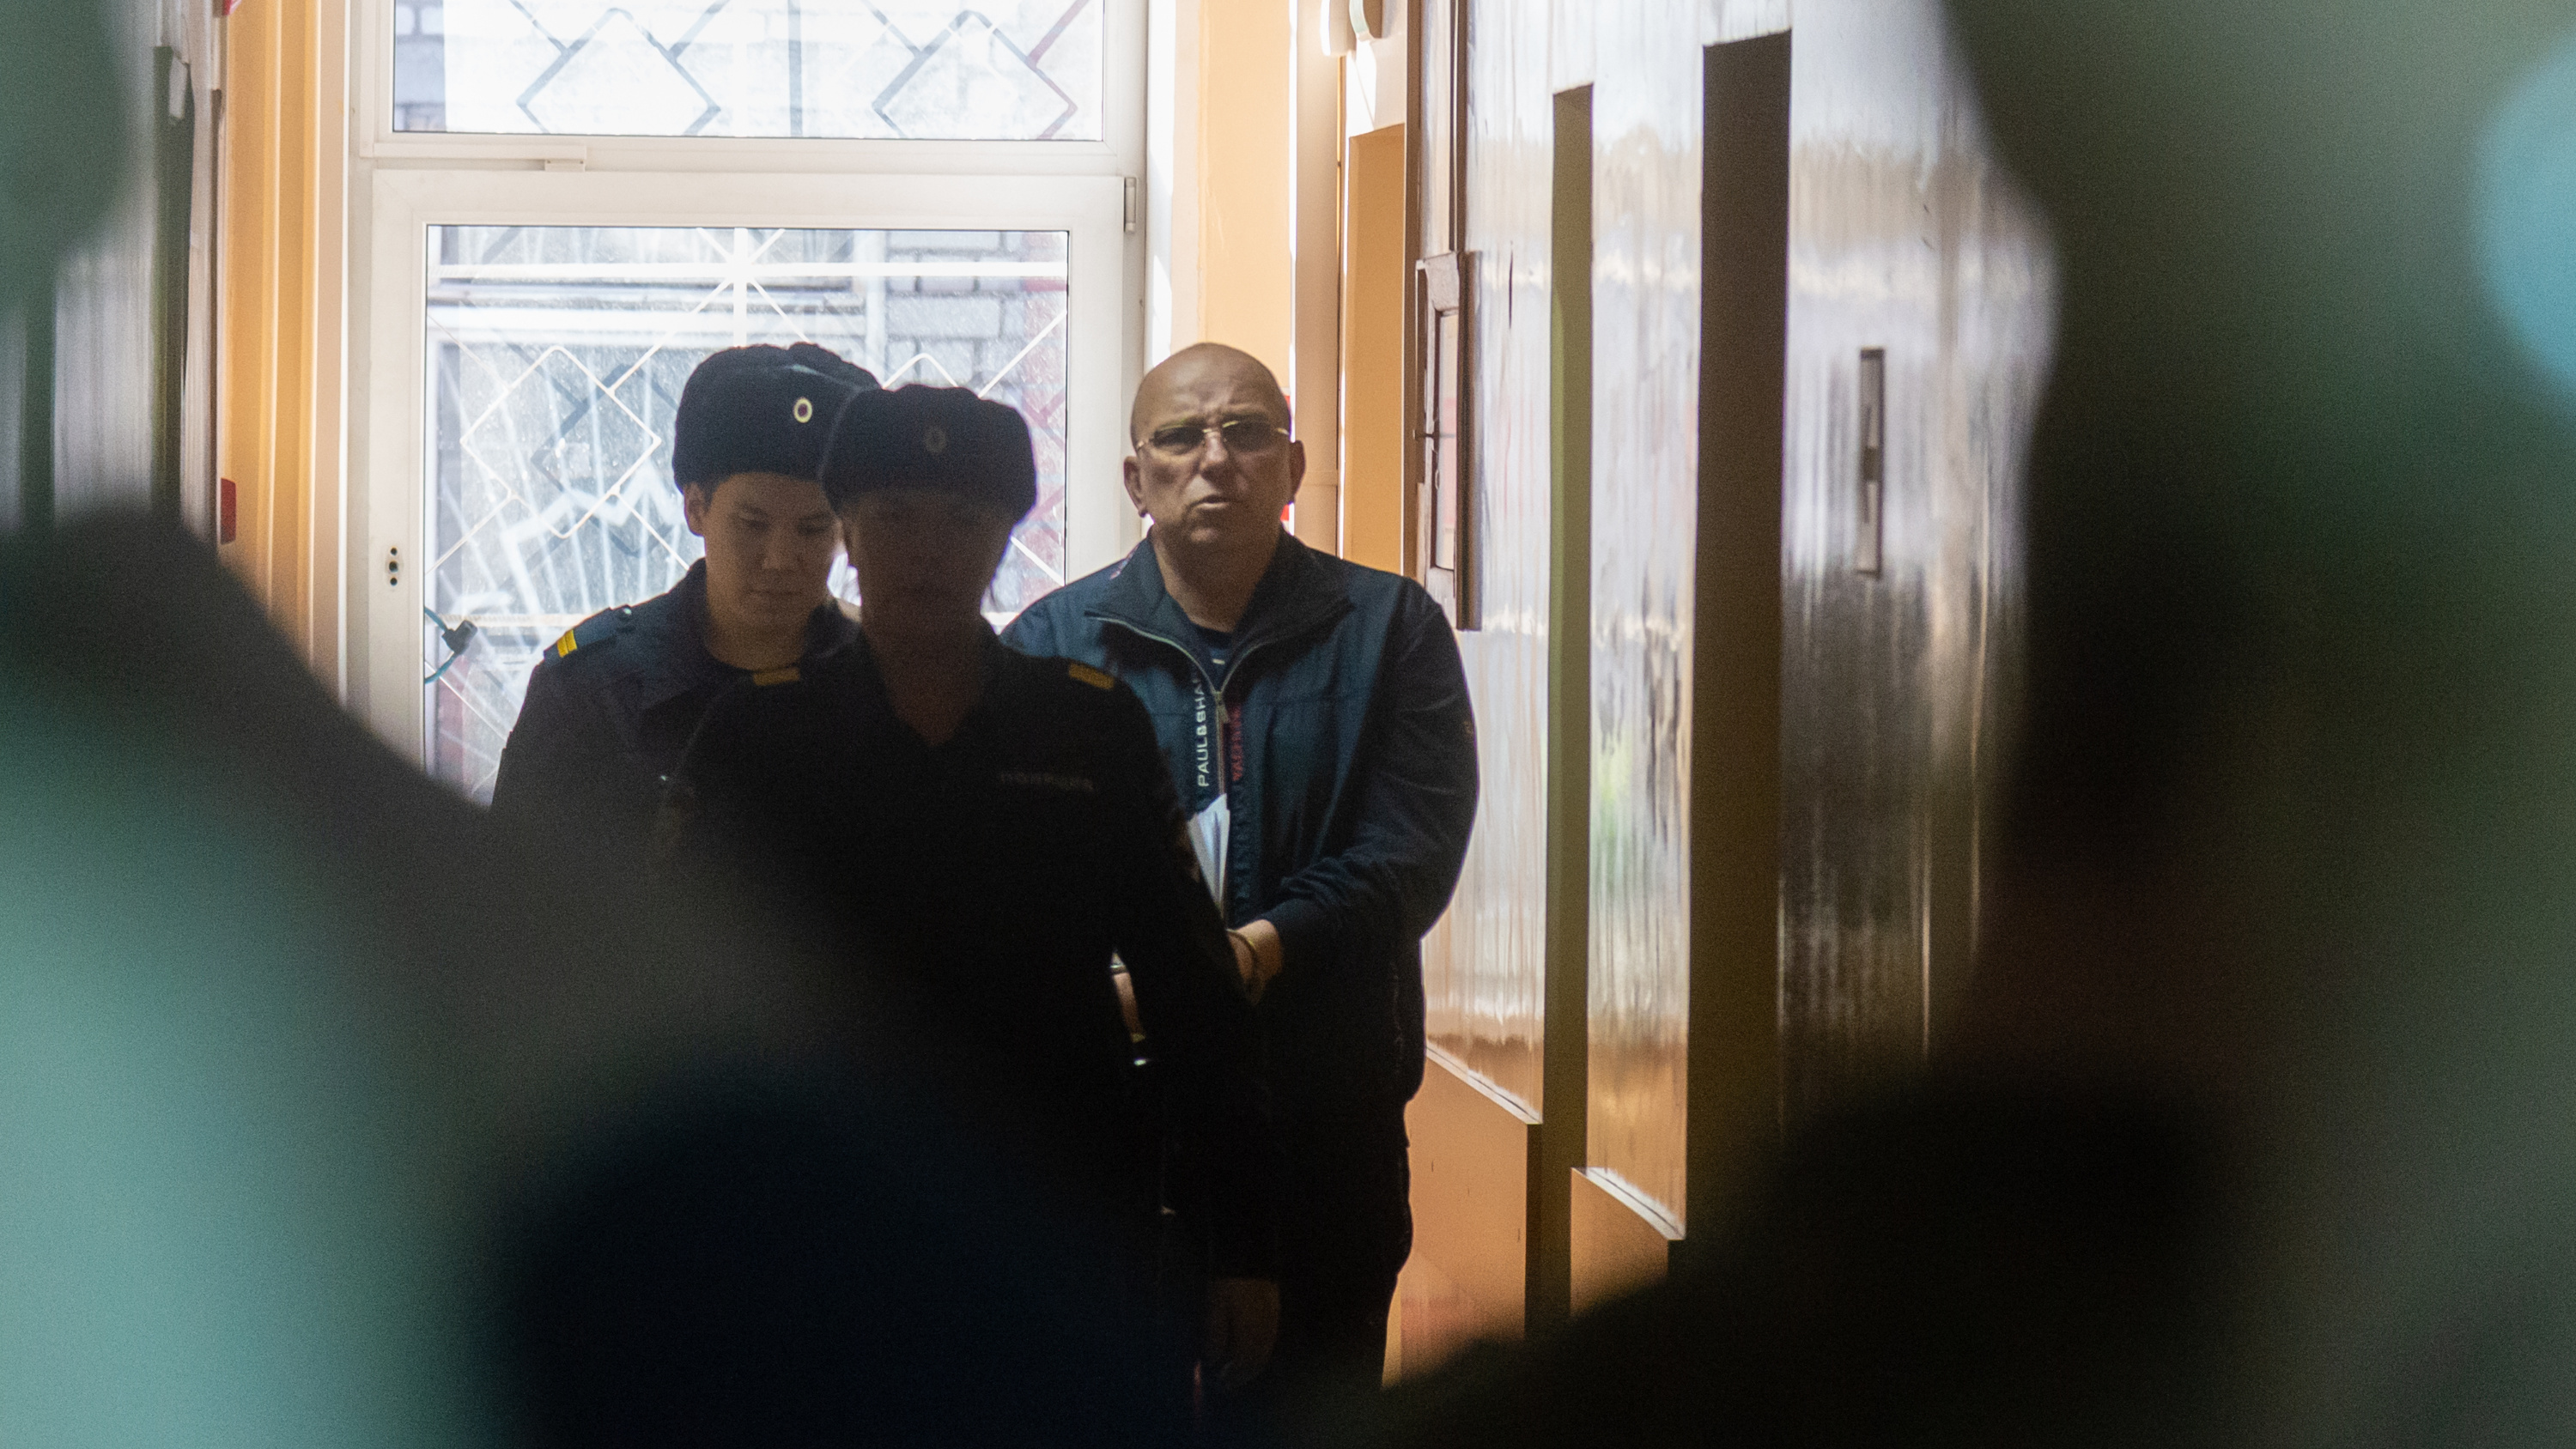 Чиновников из Волгограда судят за коррупцию в администрации Архангельска